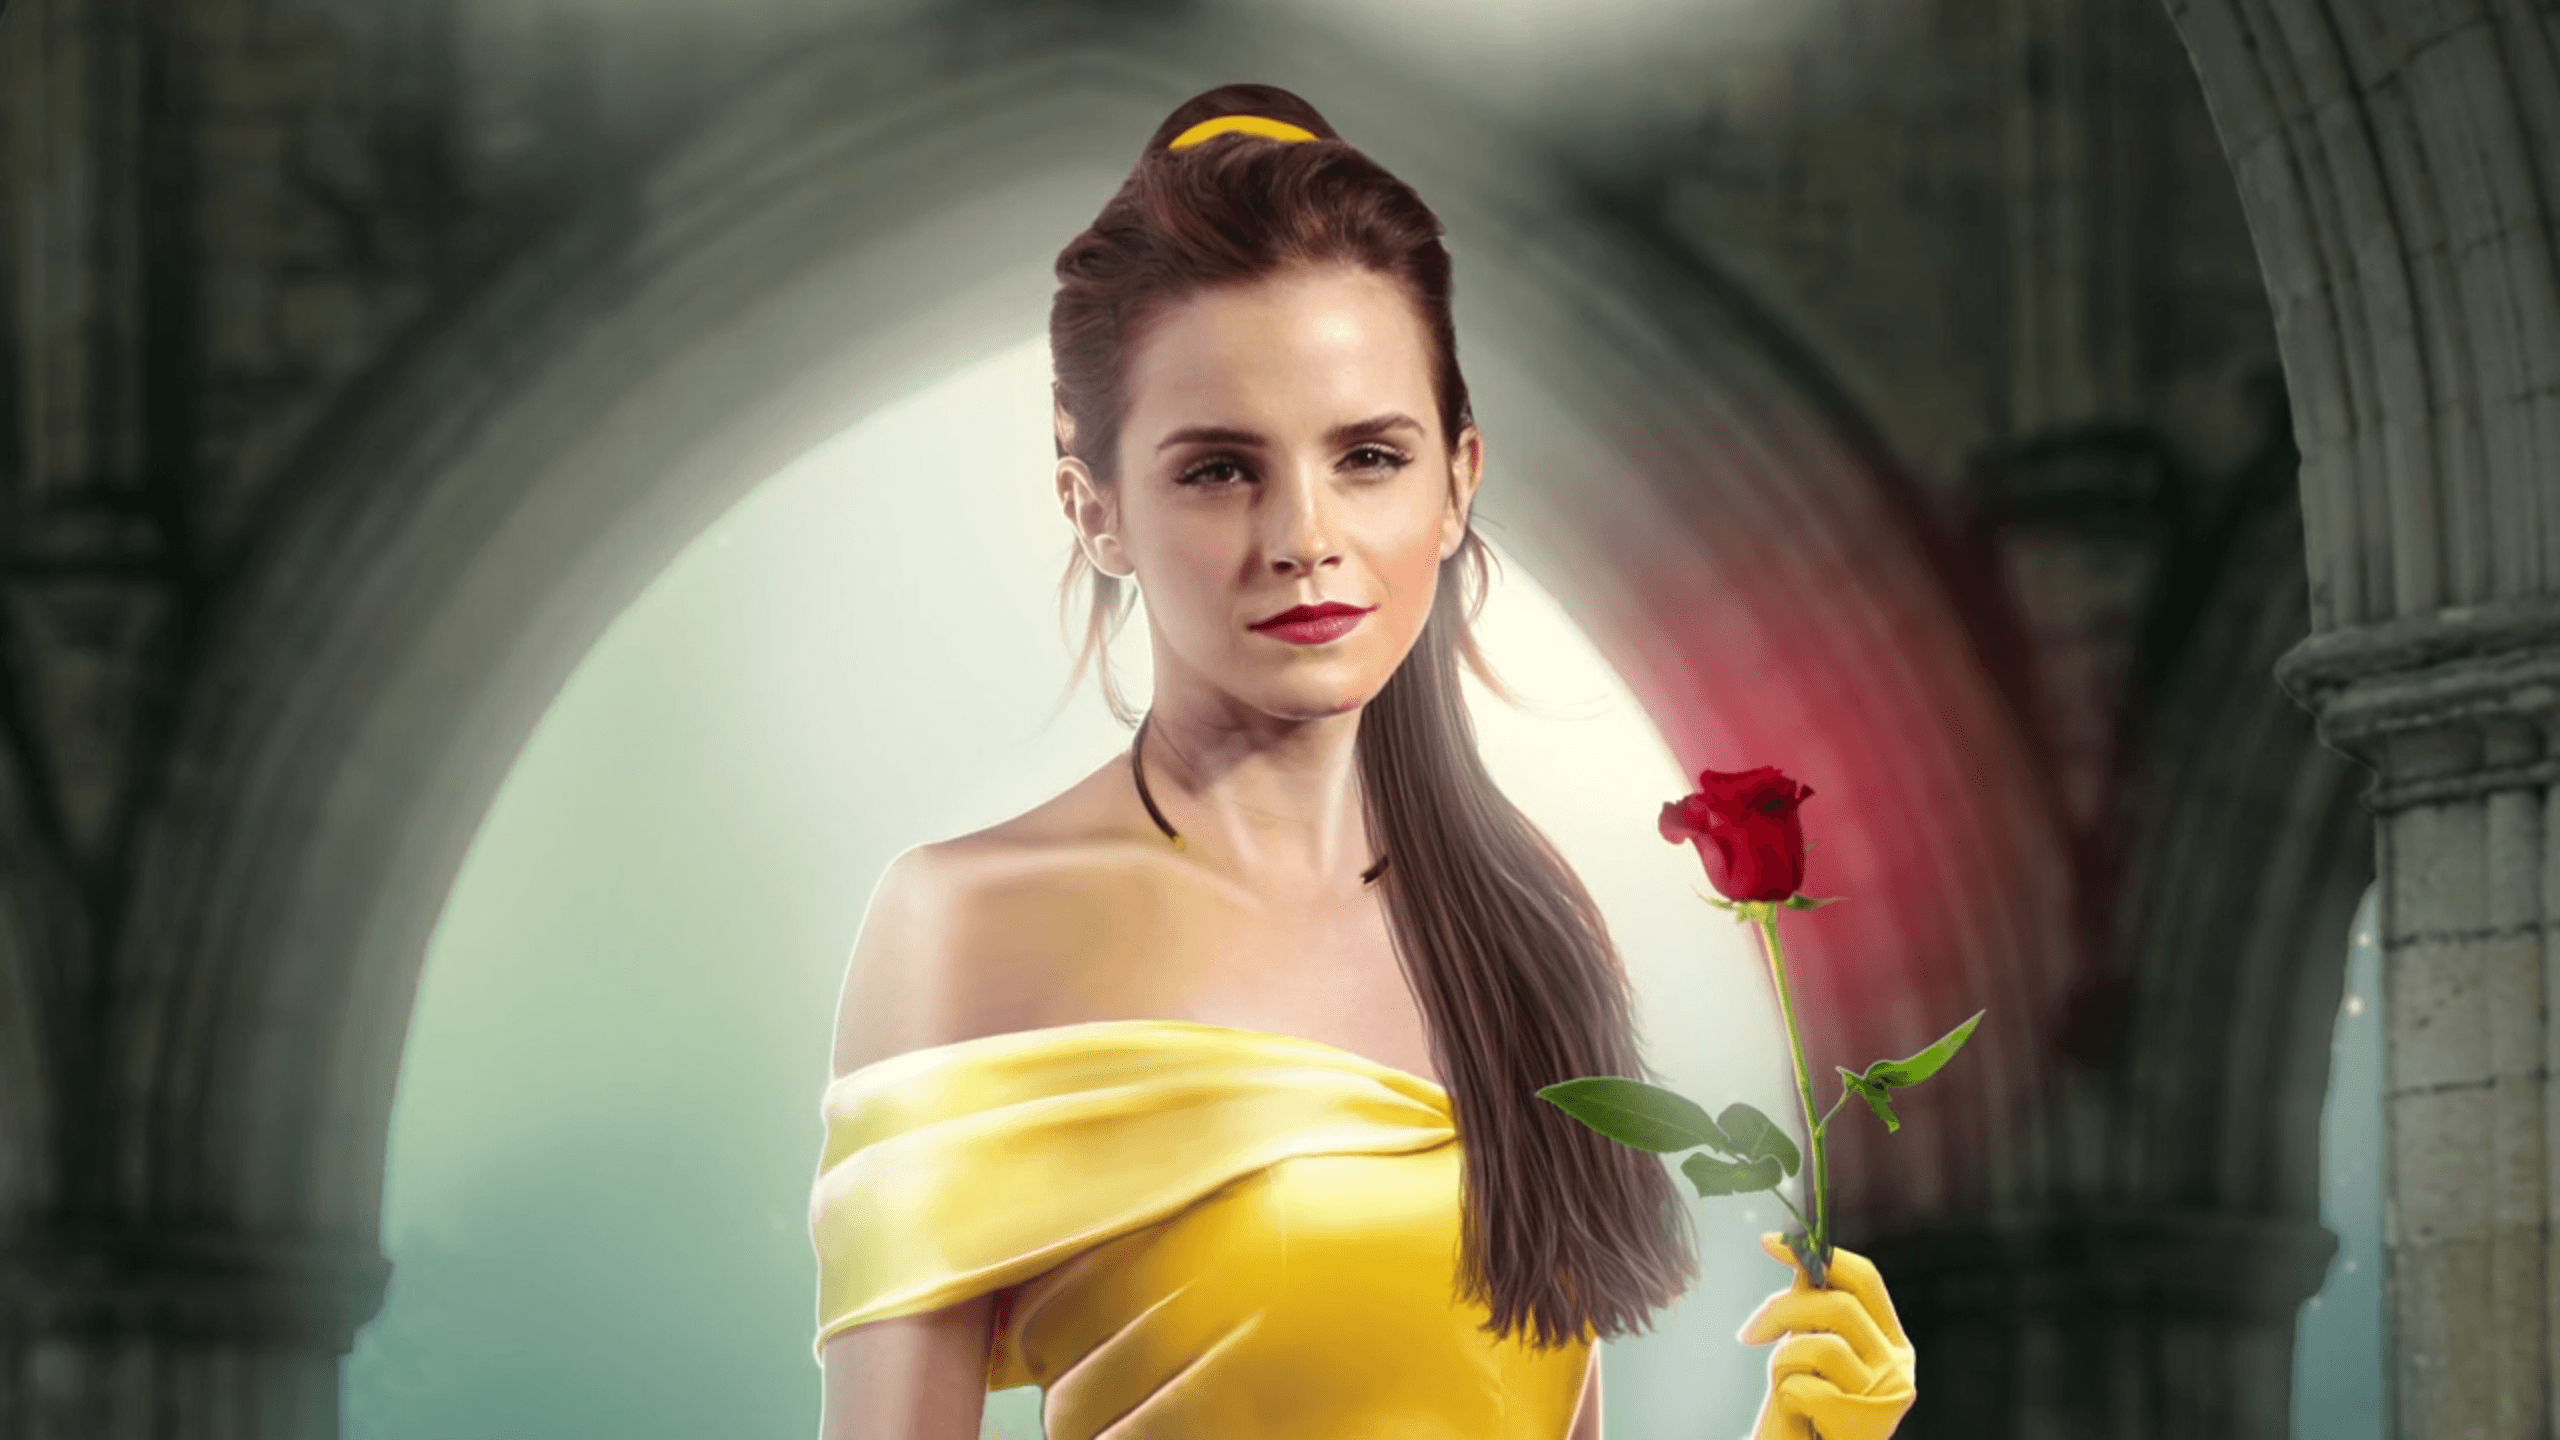 Emma Watson &;Beauty and the Beast&; Belle image is fan art